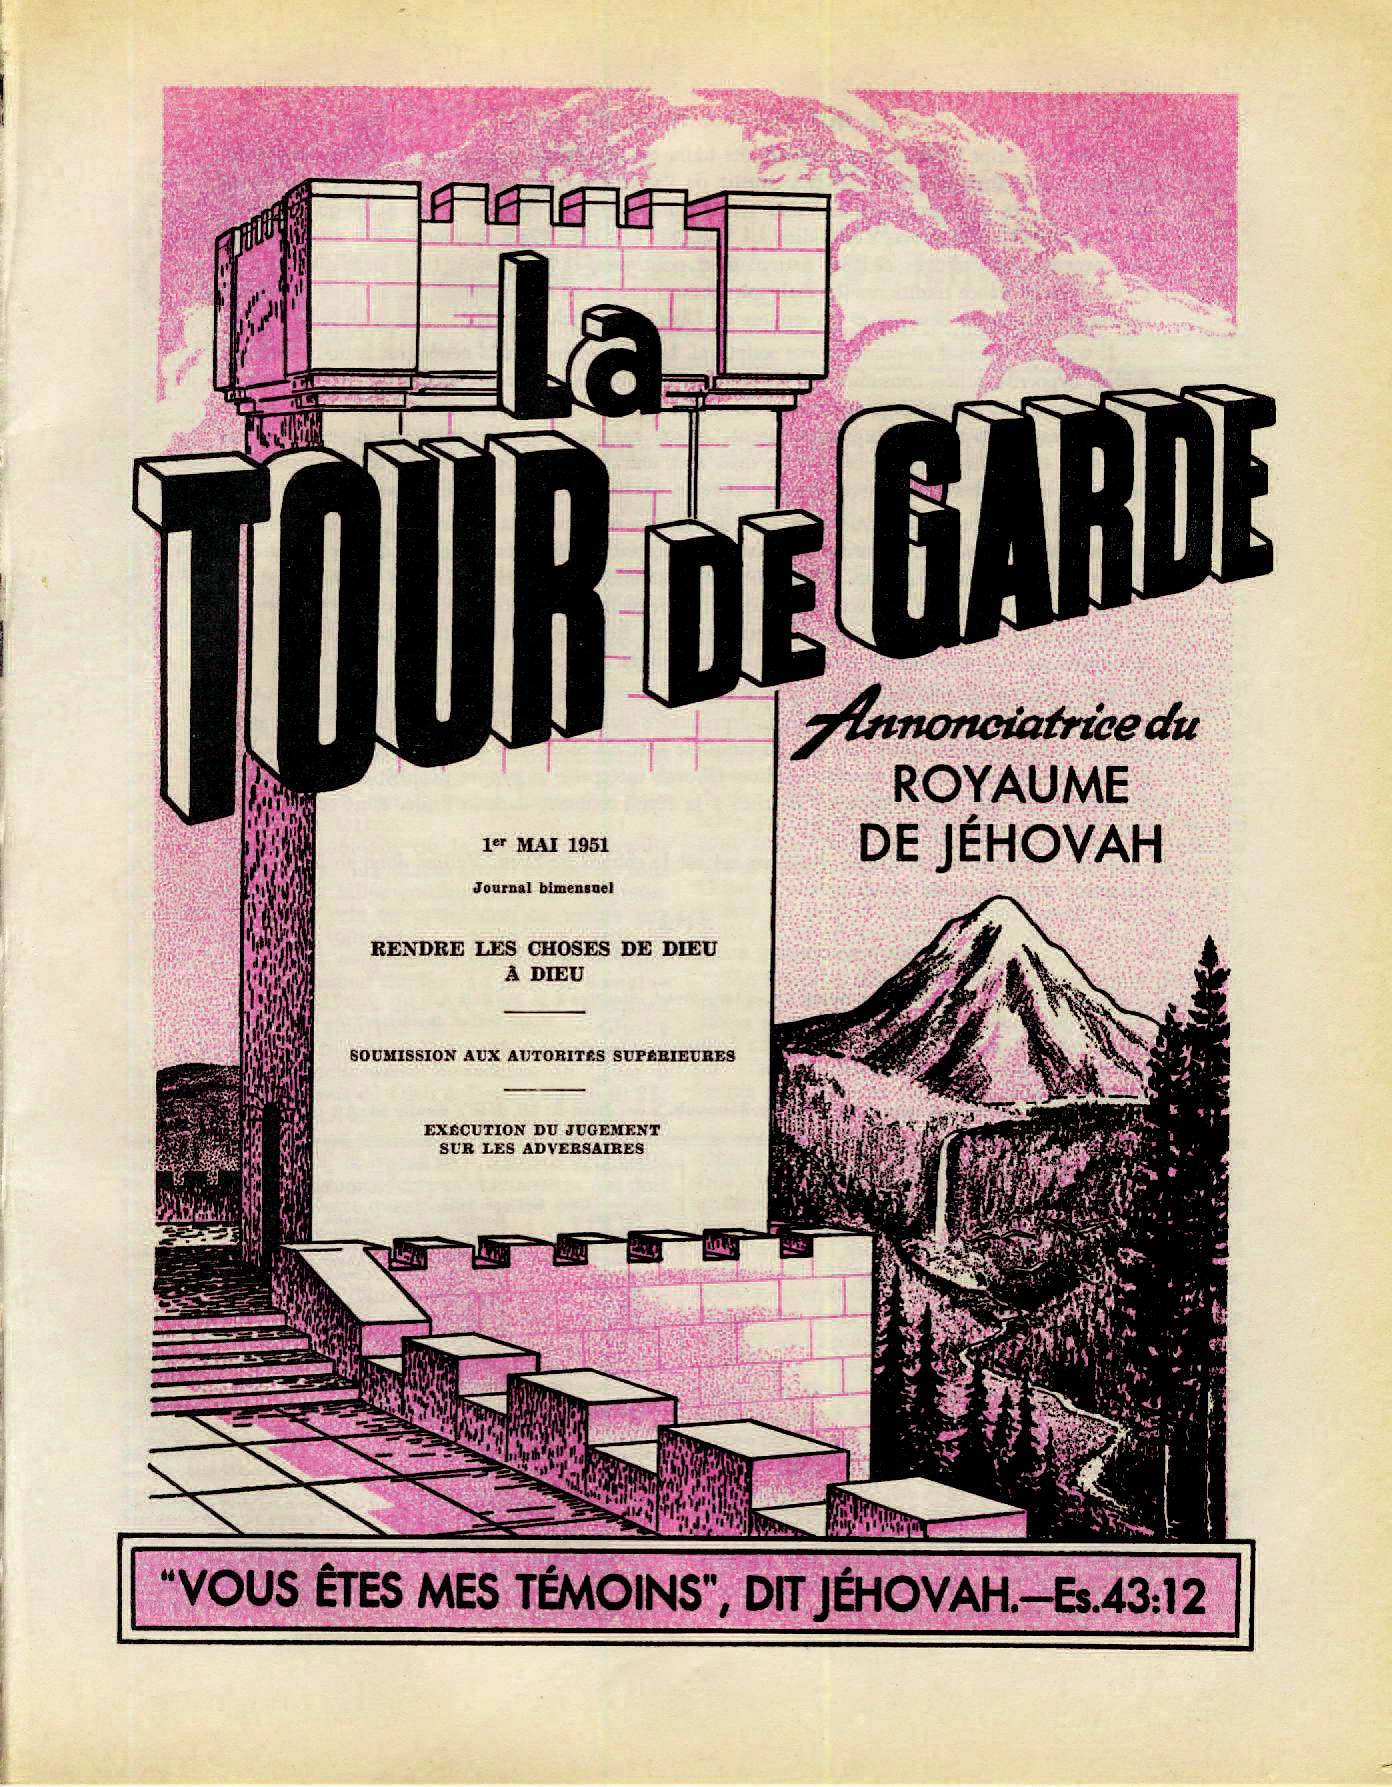 Les autorités supérieures  - Page 2 La-Tour-de-Garde-1-mai-1951-cover